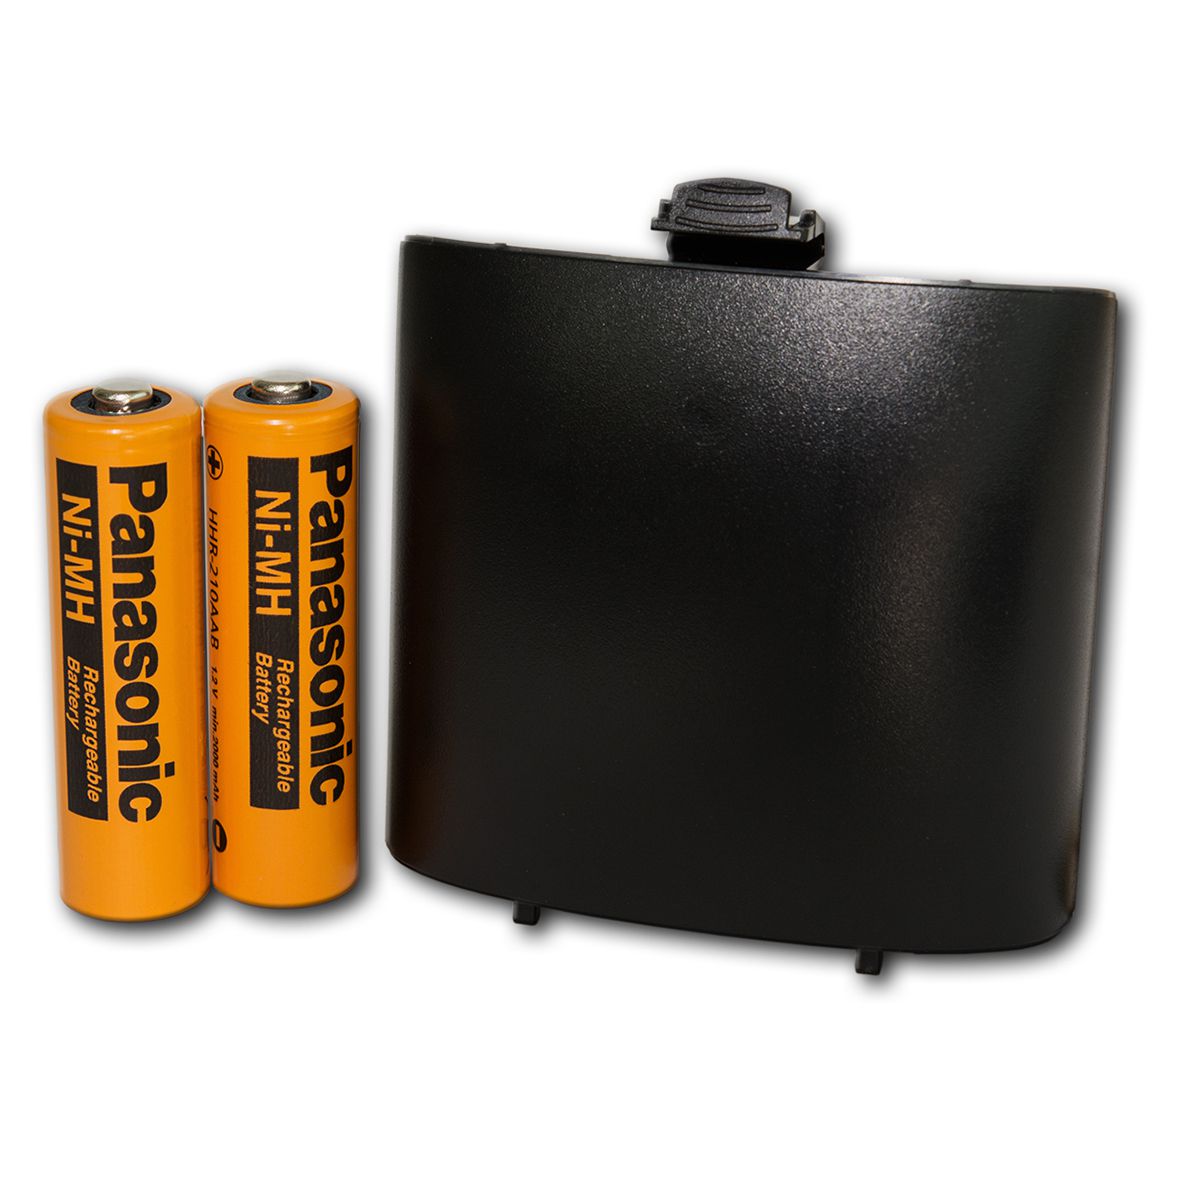 Dräger battery set for breathalyser Dräger Alcotest 68X0